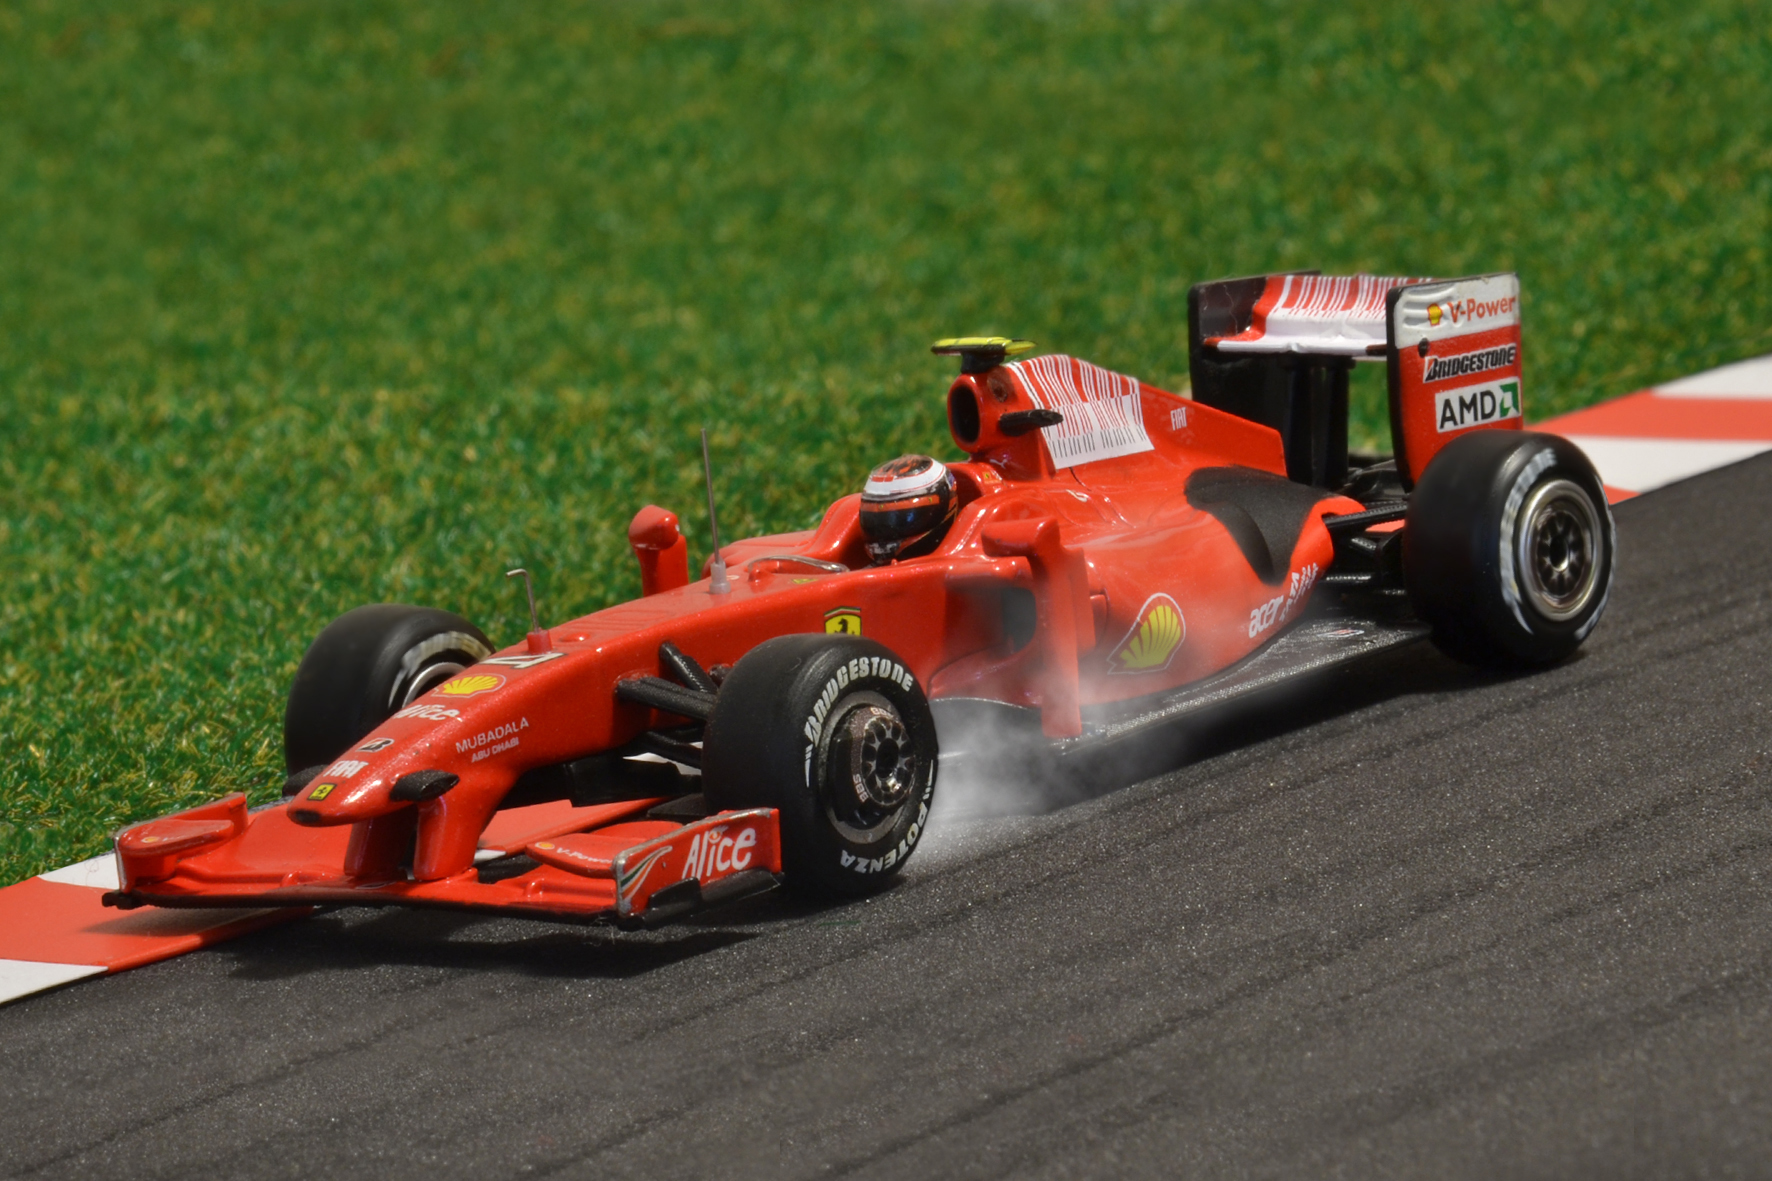 Év:2009<br />Modell: F60<br />Pilóta: Kimi Räikkönen<br />Gyártó: Hot Wheels